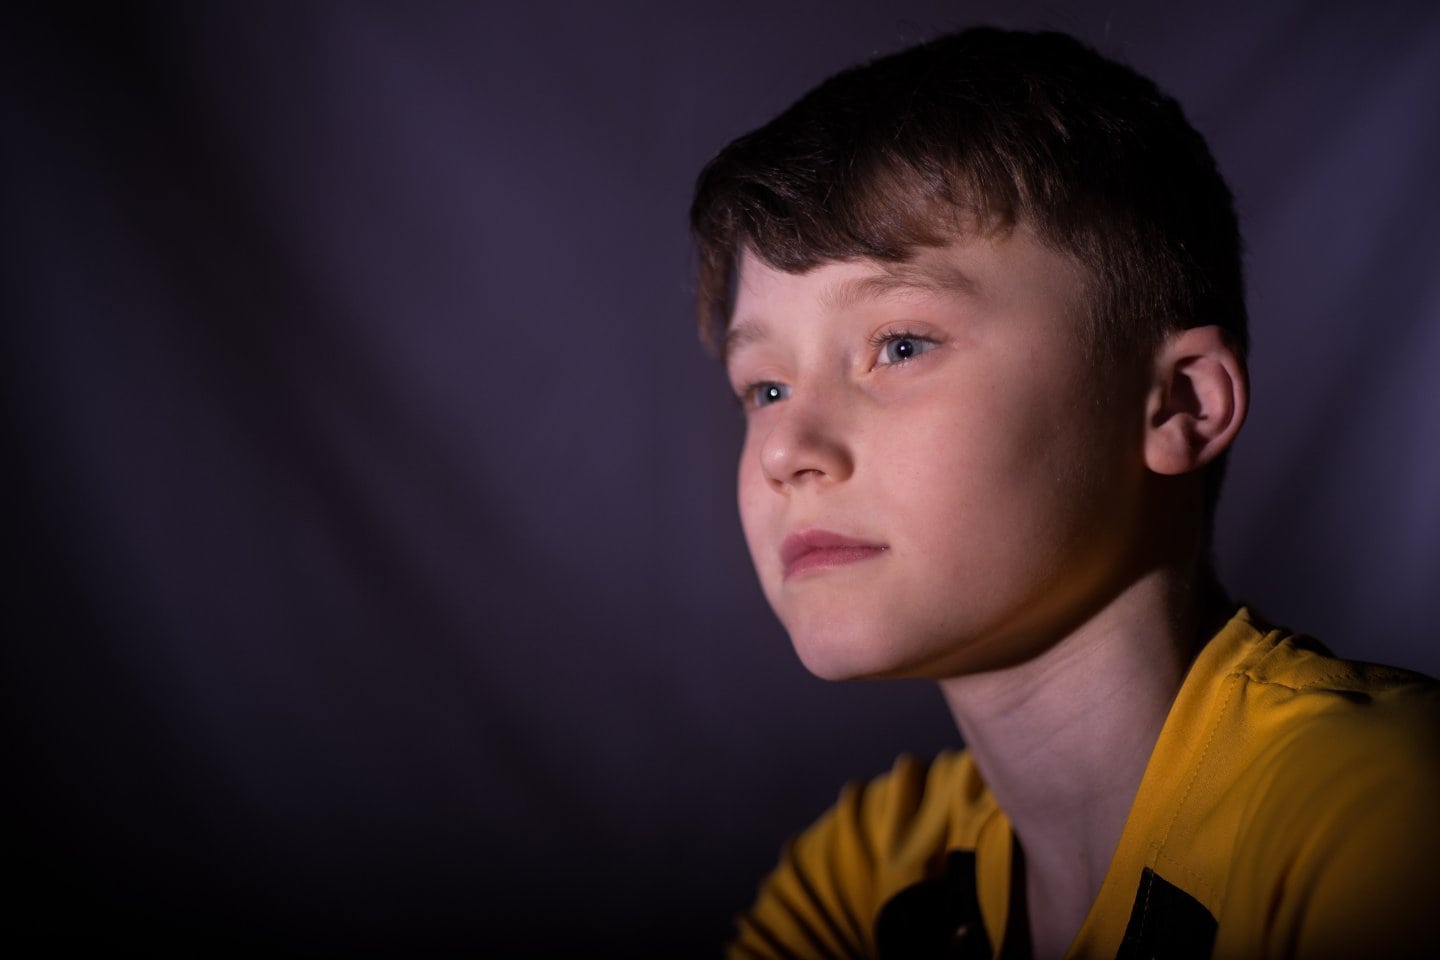 Young boy in yellow shirt overcoming teen bullying.